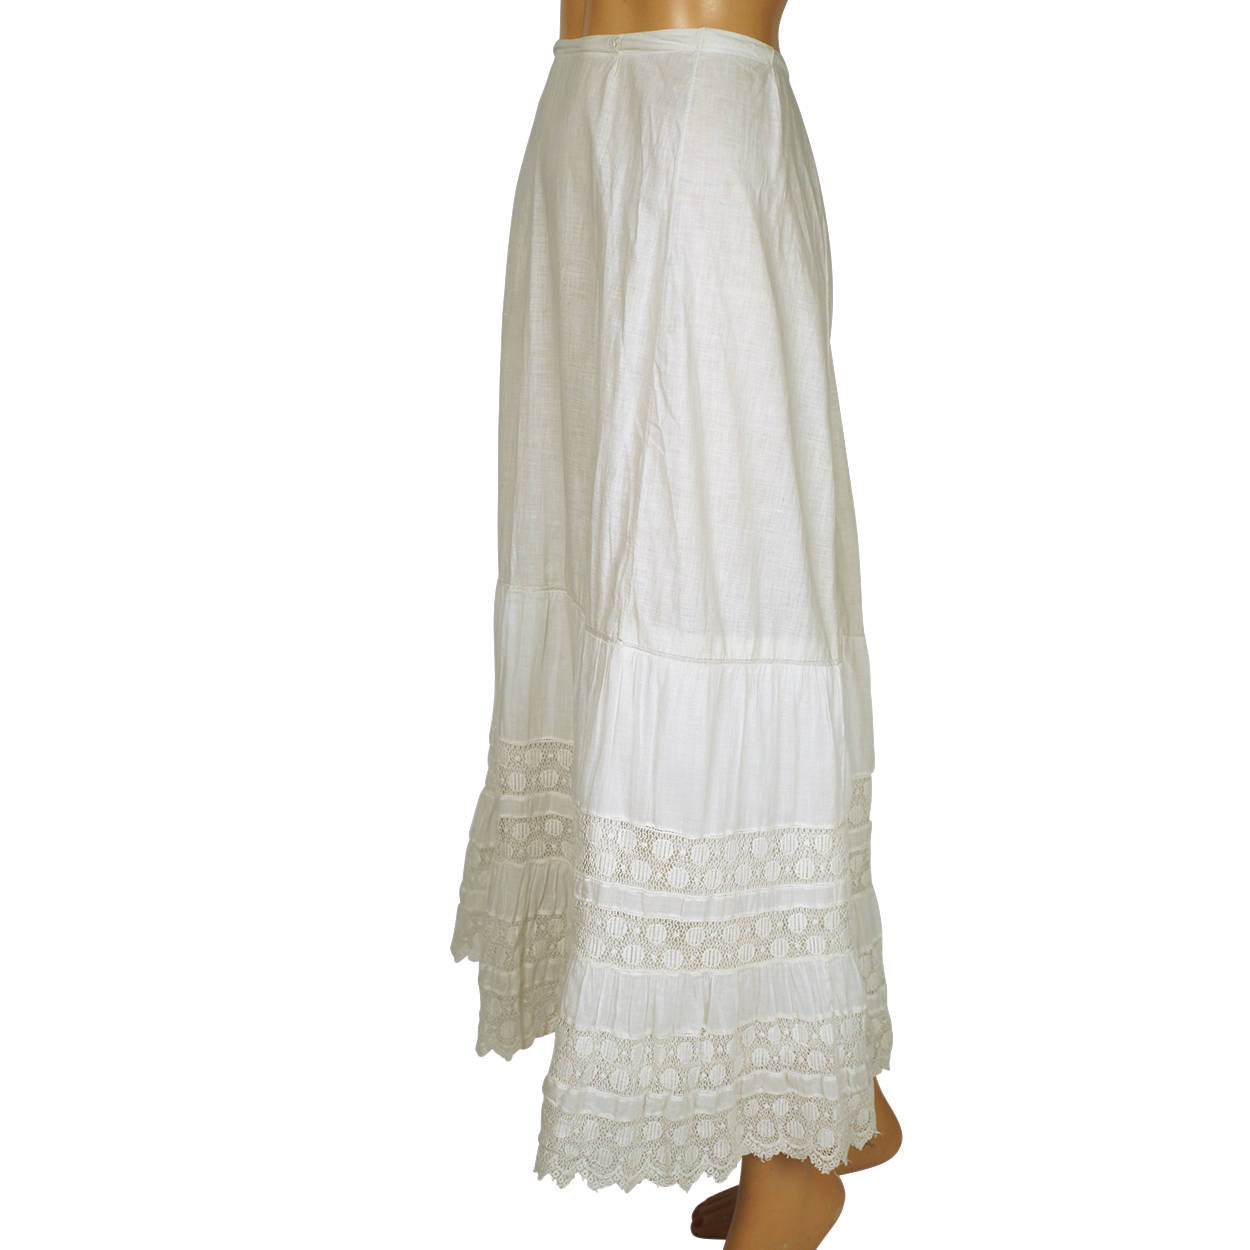 Antique Victorian Lace Flounce Petticoat 19th c White Cotton Size M 29”  Waist